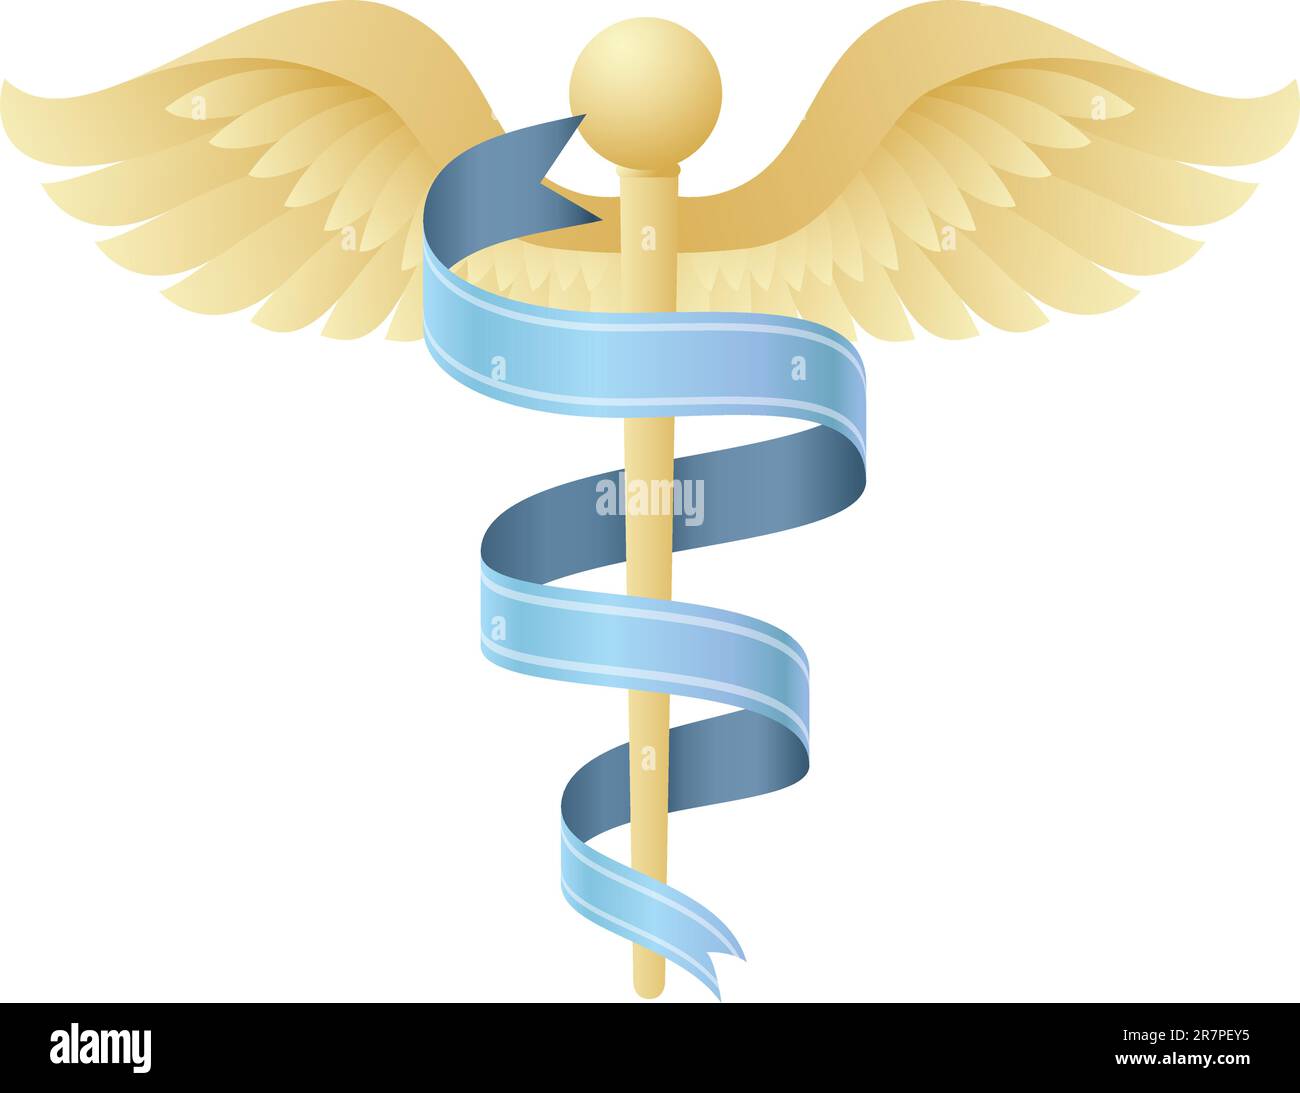 Vektor Illustration eines modernen medizinischen Symbols wie das traditionelle Caduceus-Emblem der Gesundheit, Medizin, Krankenhäuser, Ärzte, Krankenwagen.Icon kann auch... Stock Vektor